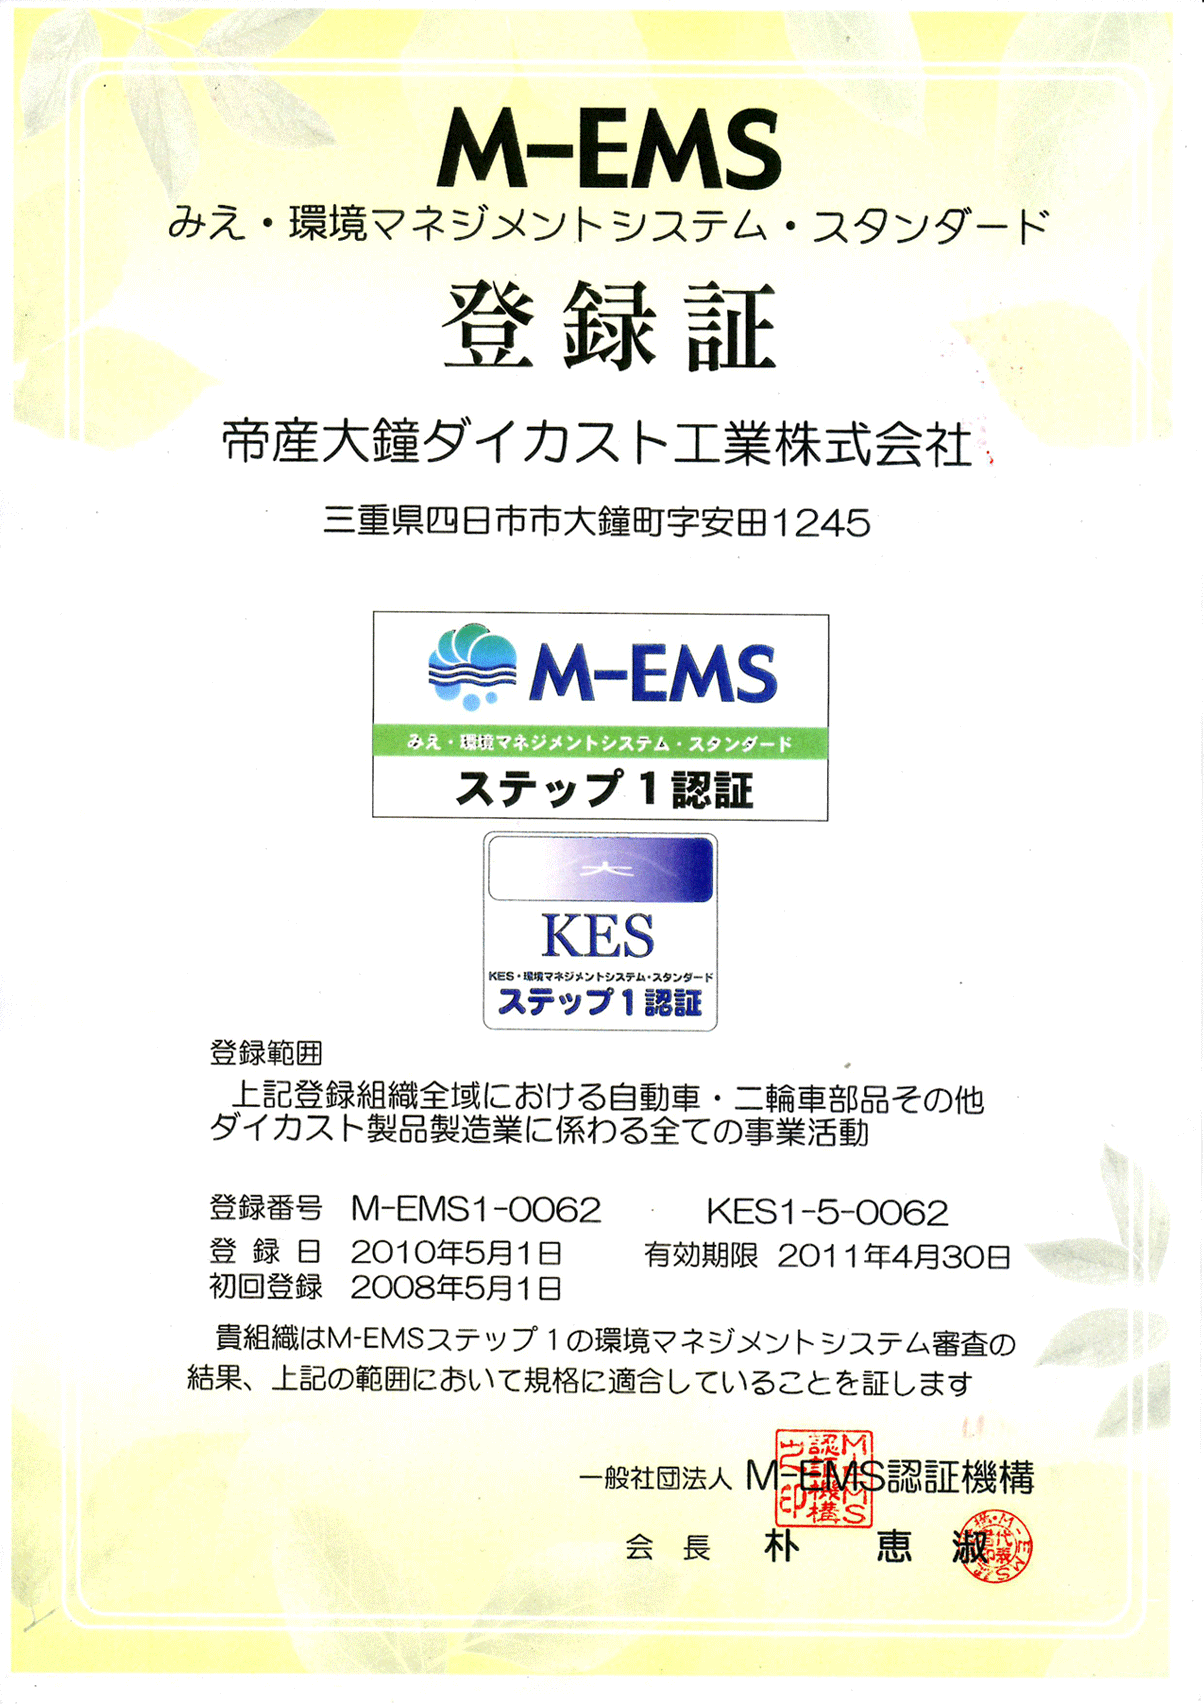 M-EMS 2010年 获得认证